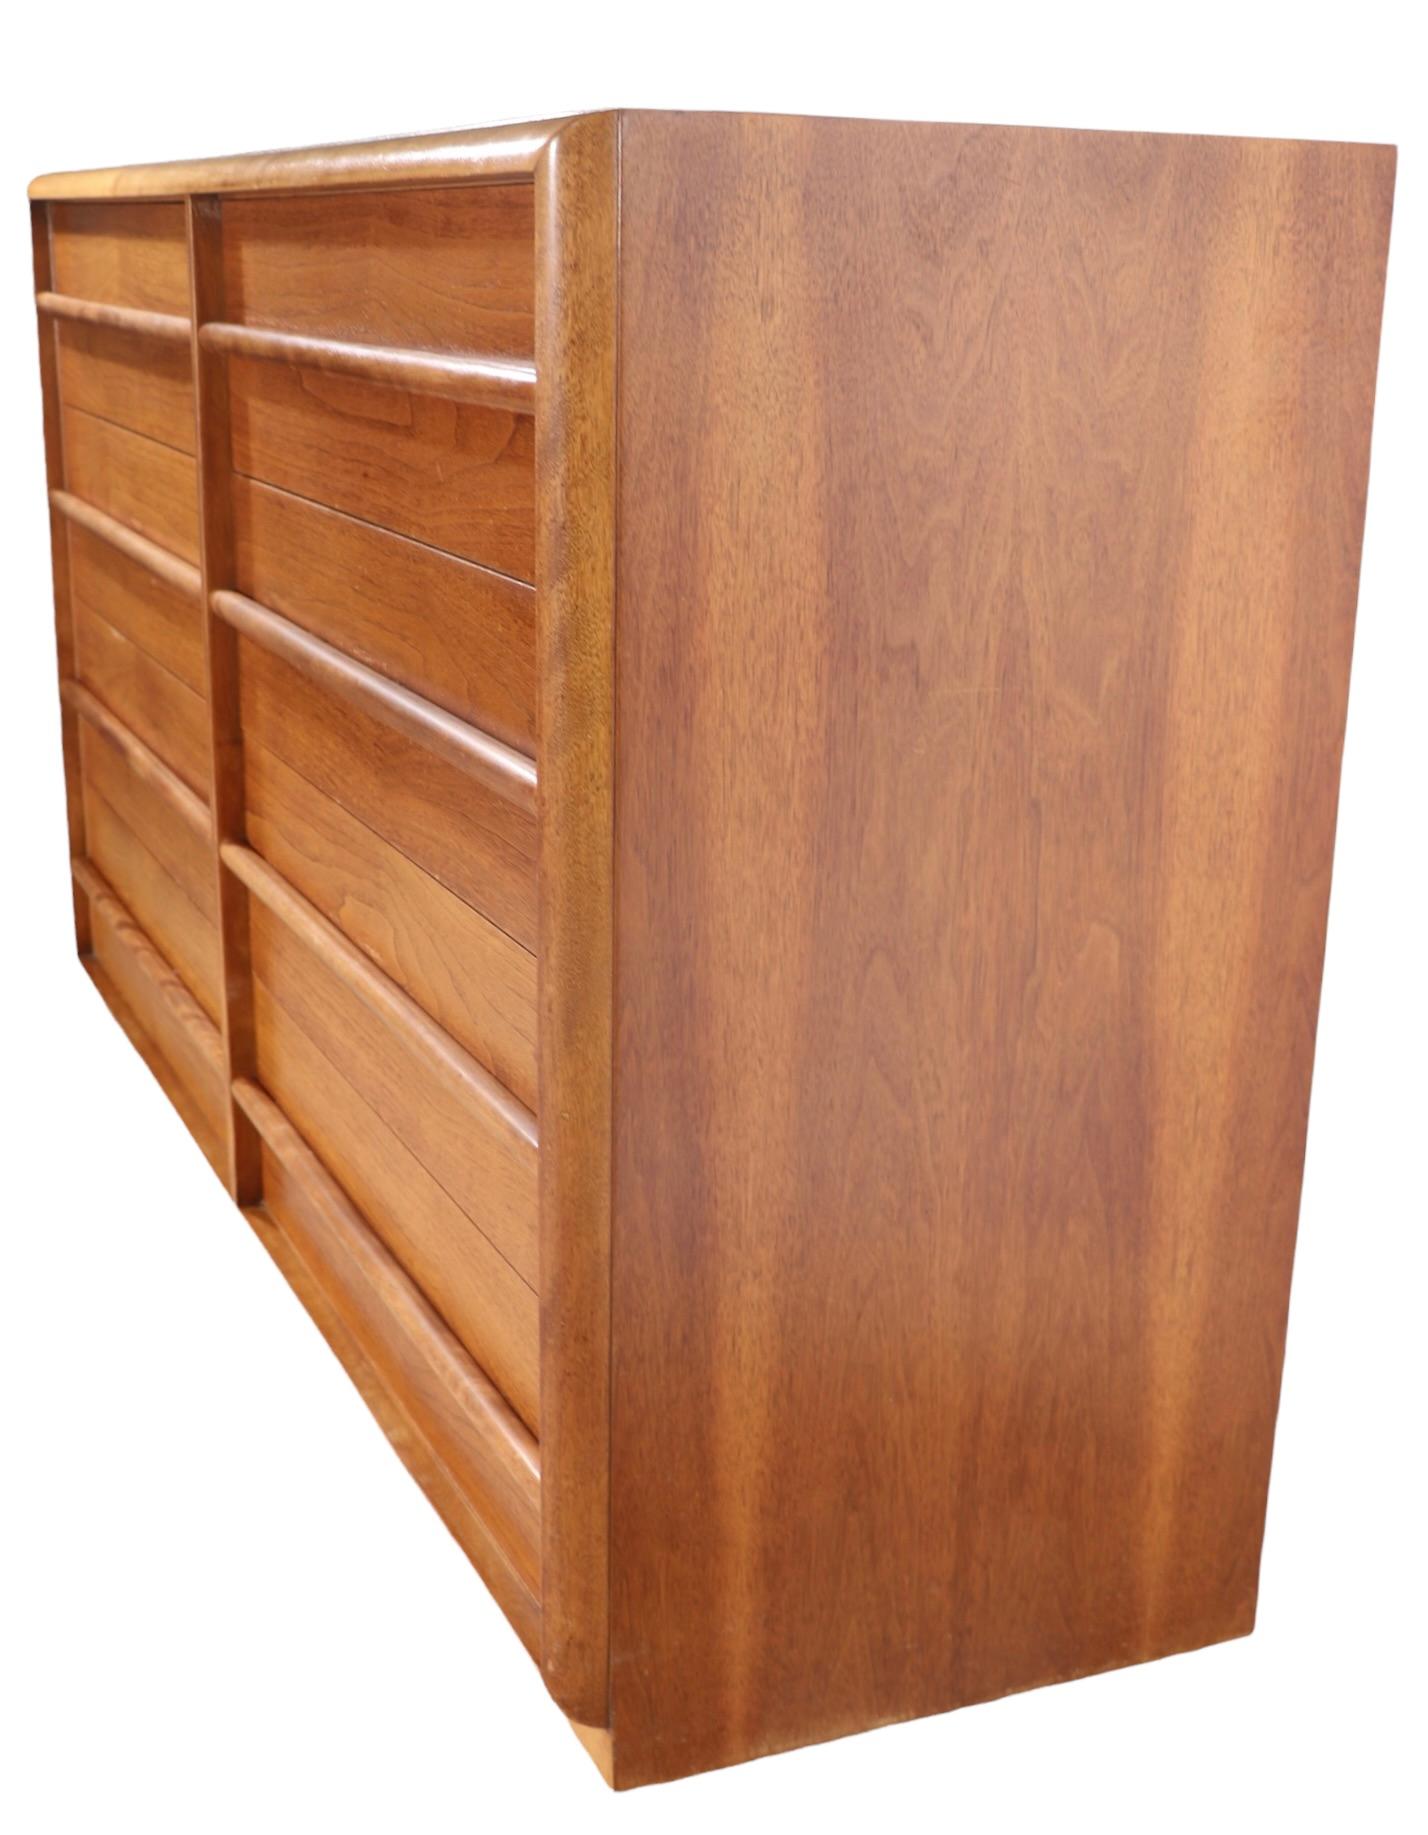 8 Drawer Double Dresser Designed by Robsjohn Gibbings for Widdicomb For Sale 4